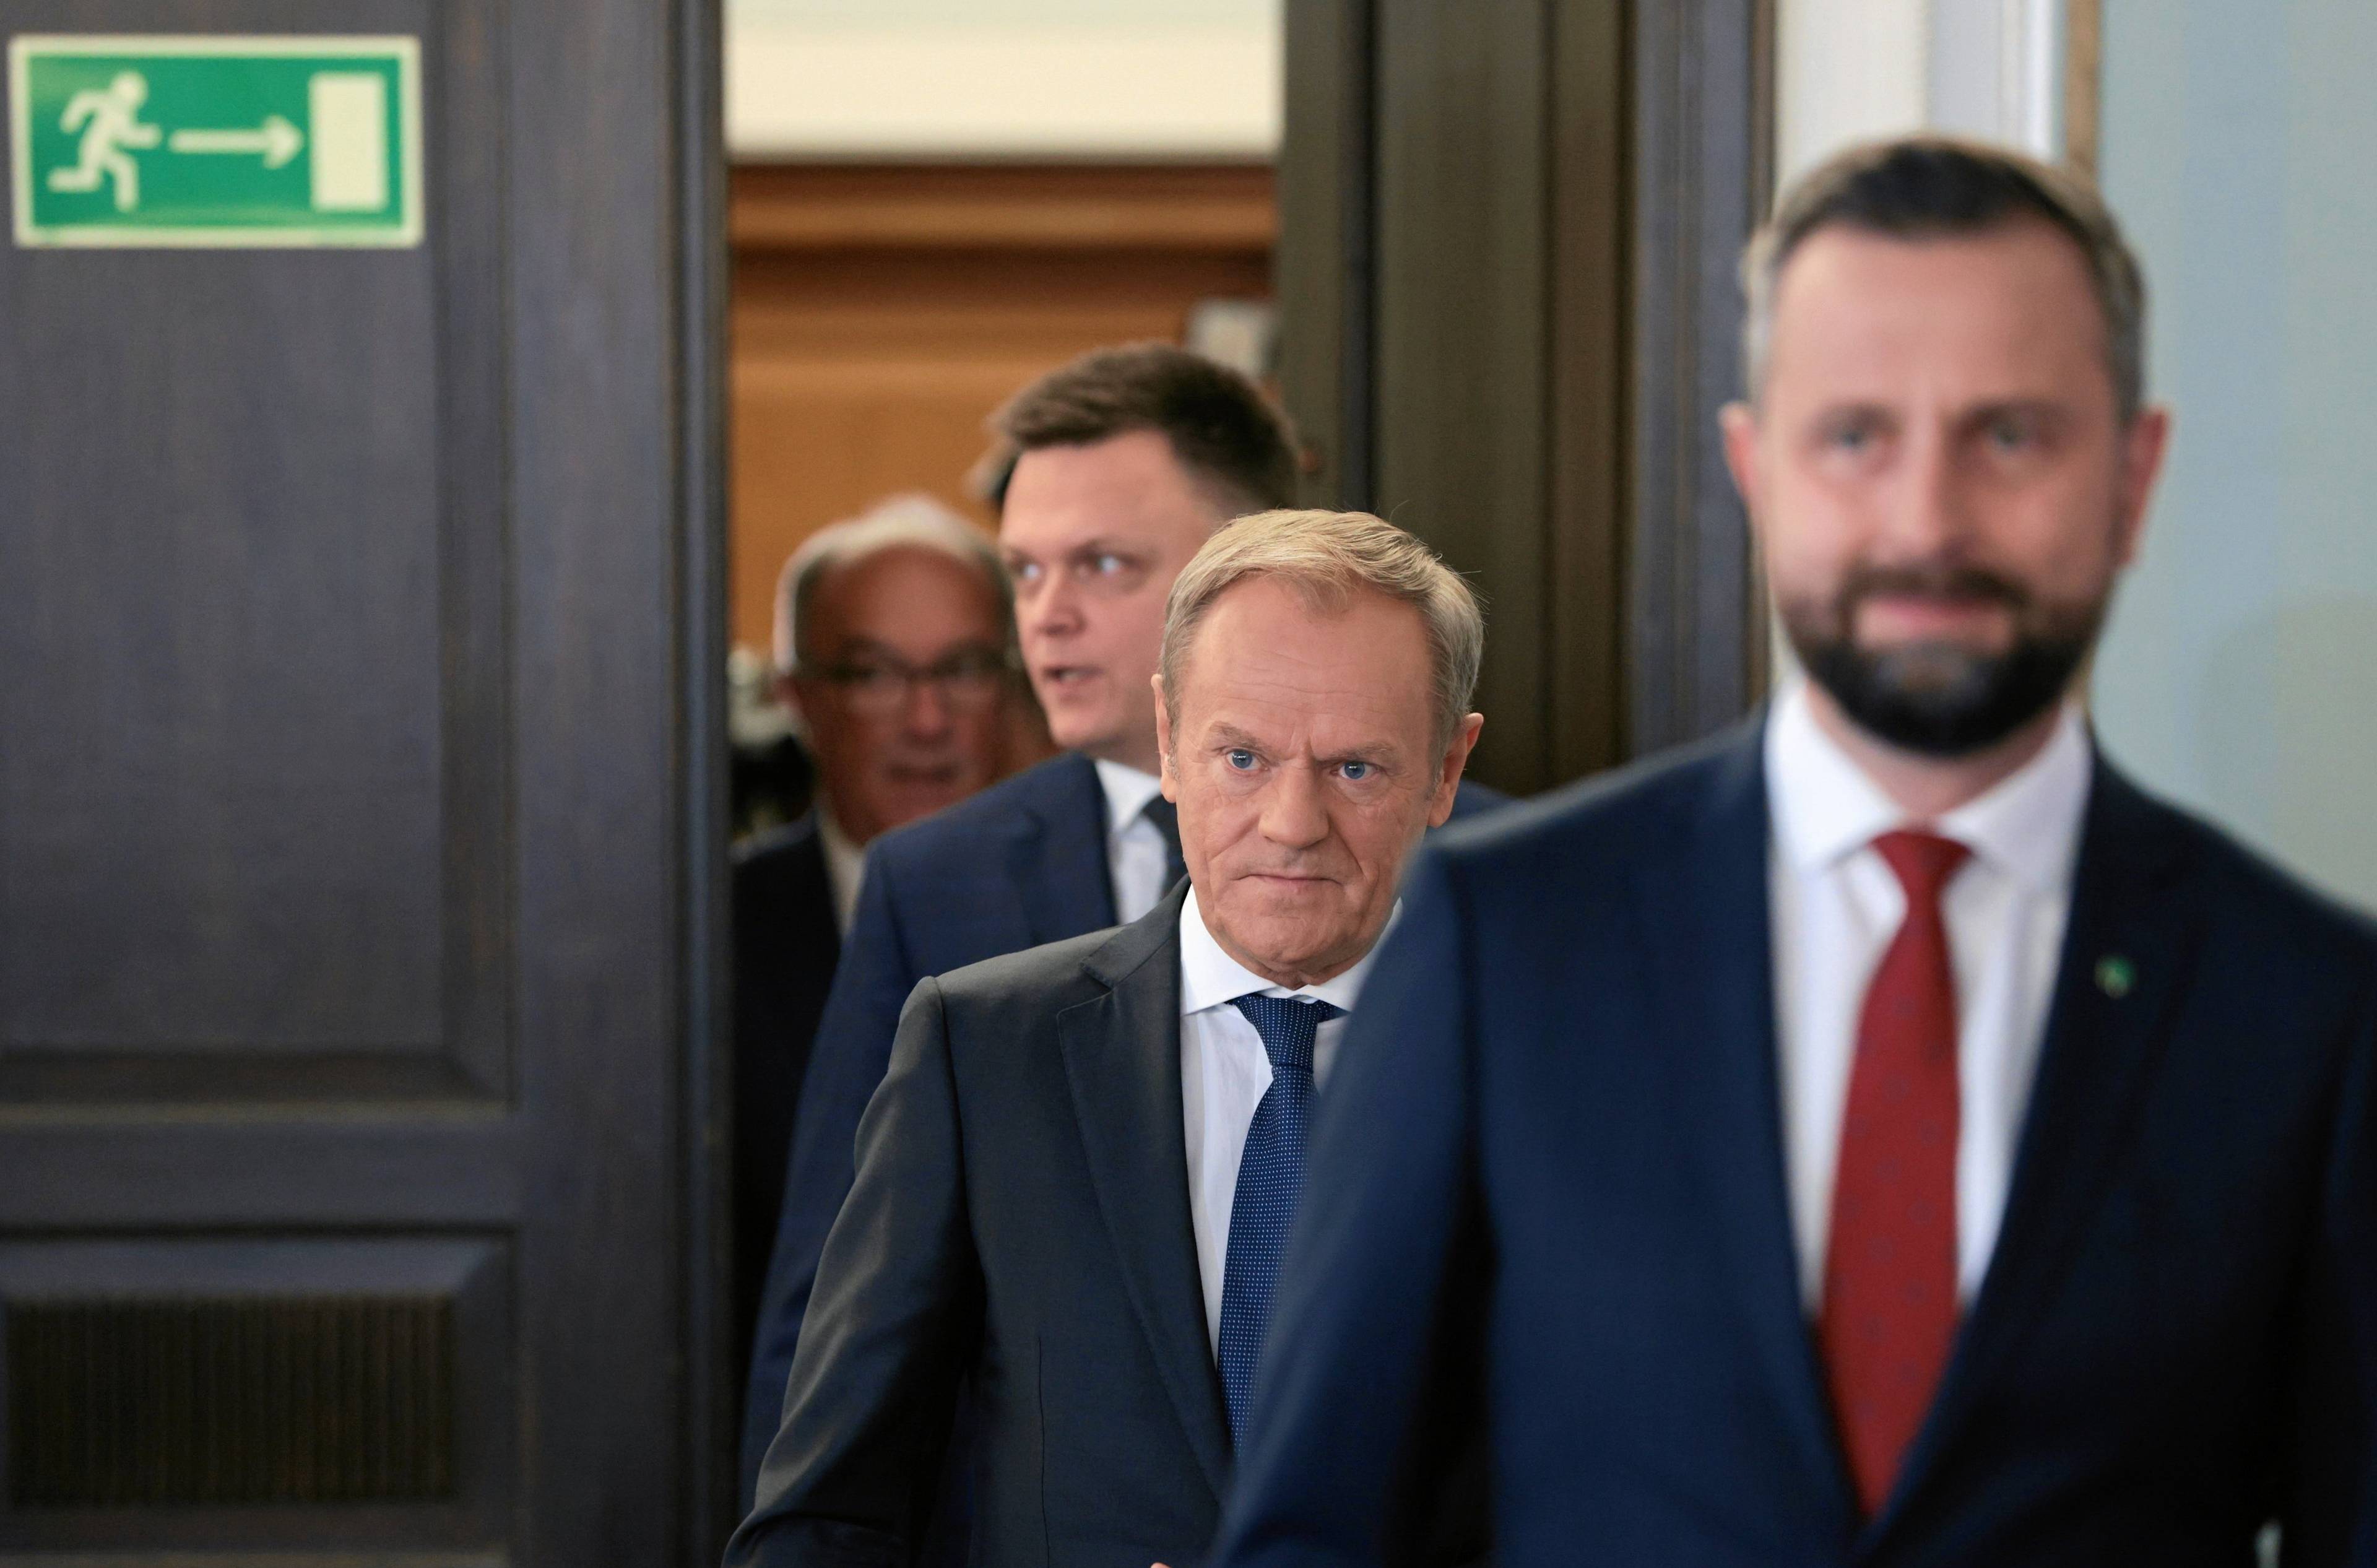 liderzy nowej koalicji wychodzą na konferencję prasową, na pierwszym planie Władysław Kosiniak-Kamysz, dalej Donald Tusk, Szymon Hołownia i na końcu Włodzimierz Czarzasty